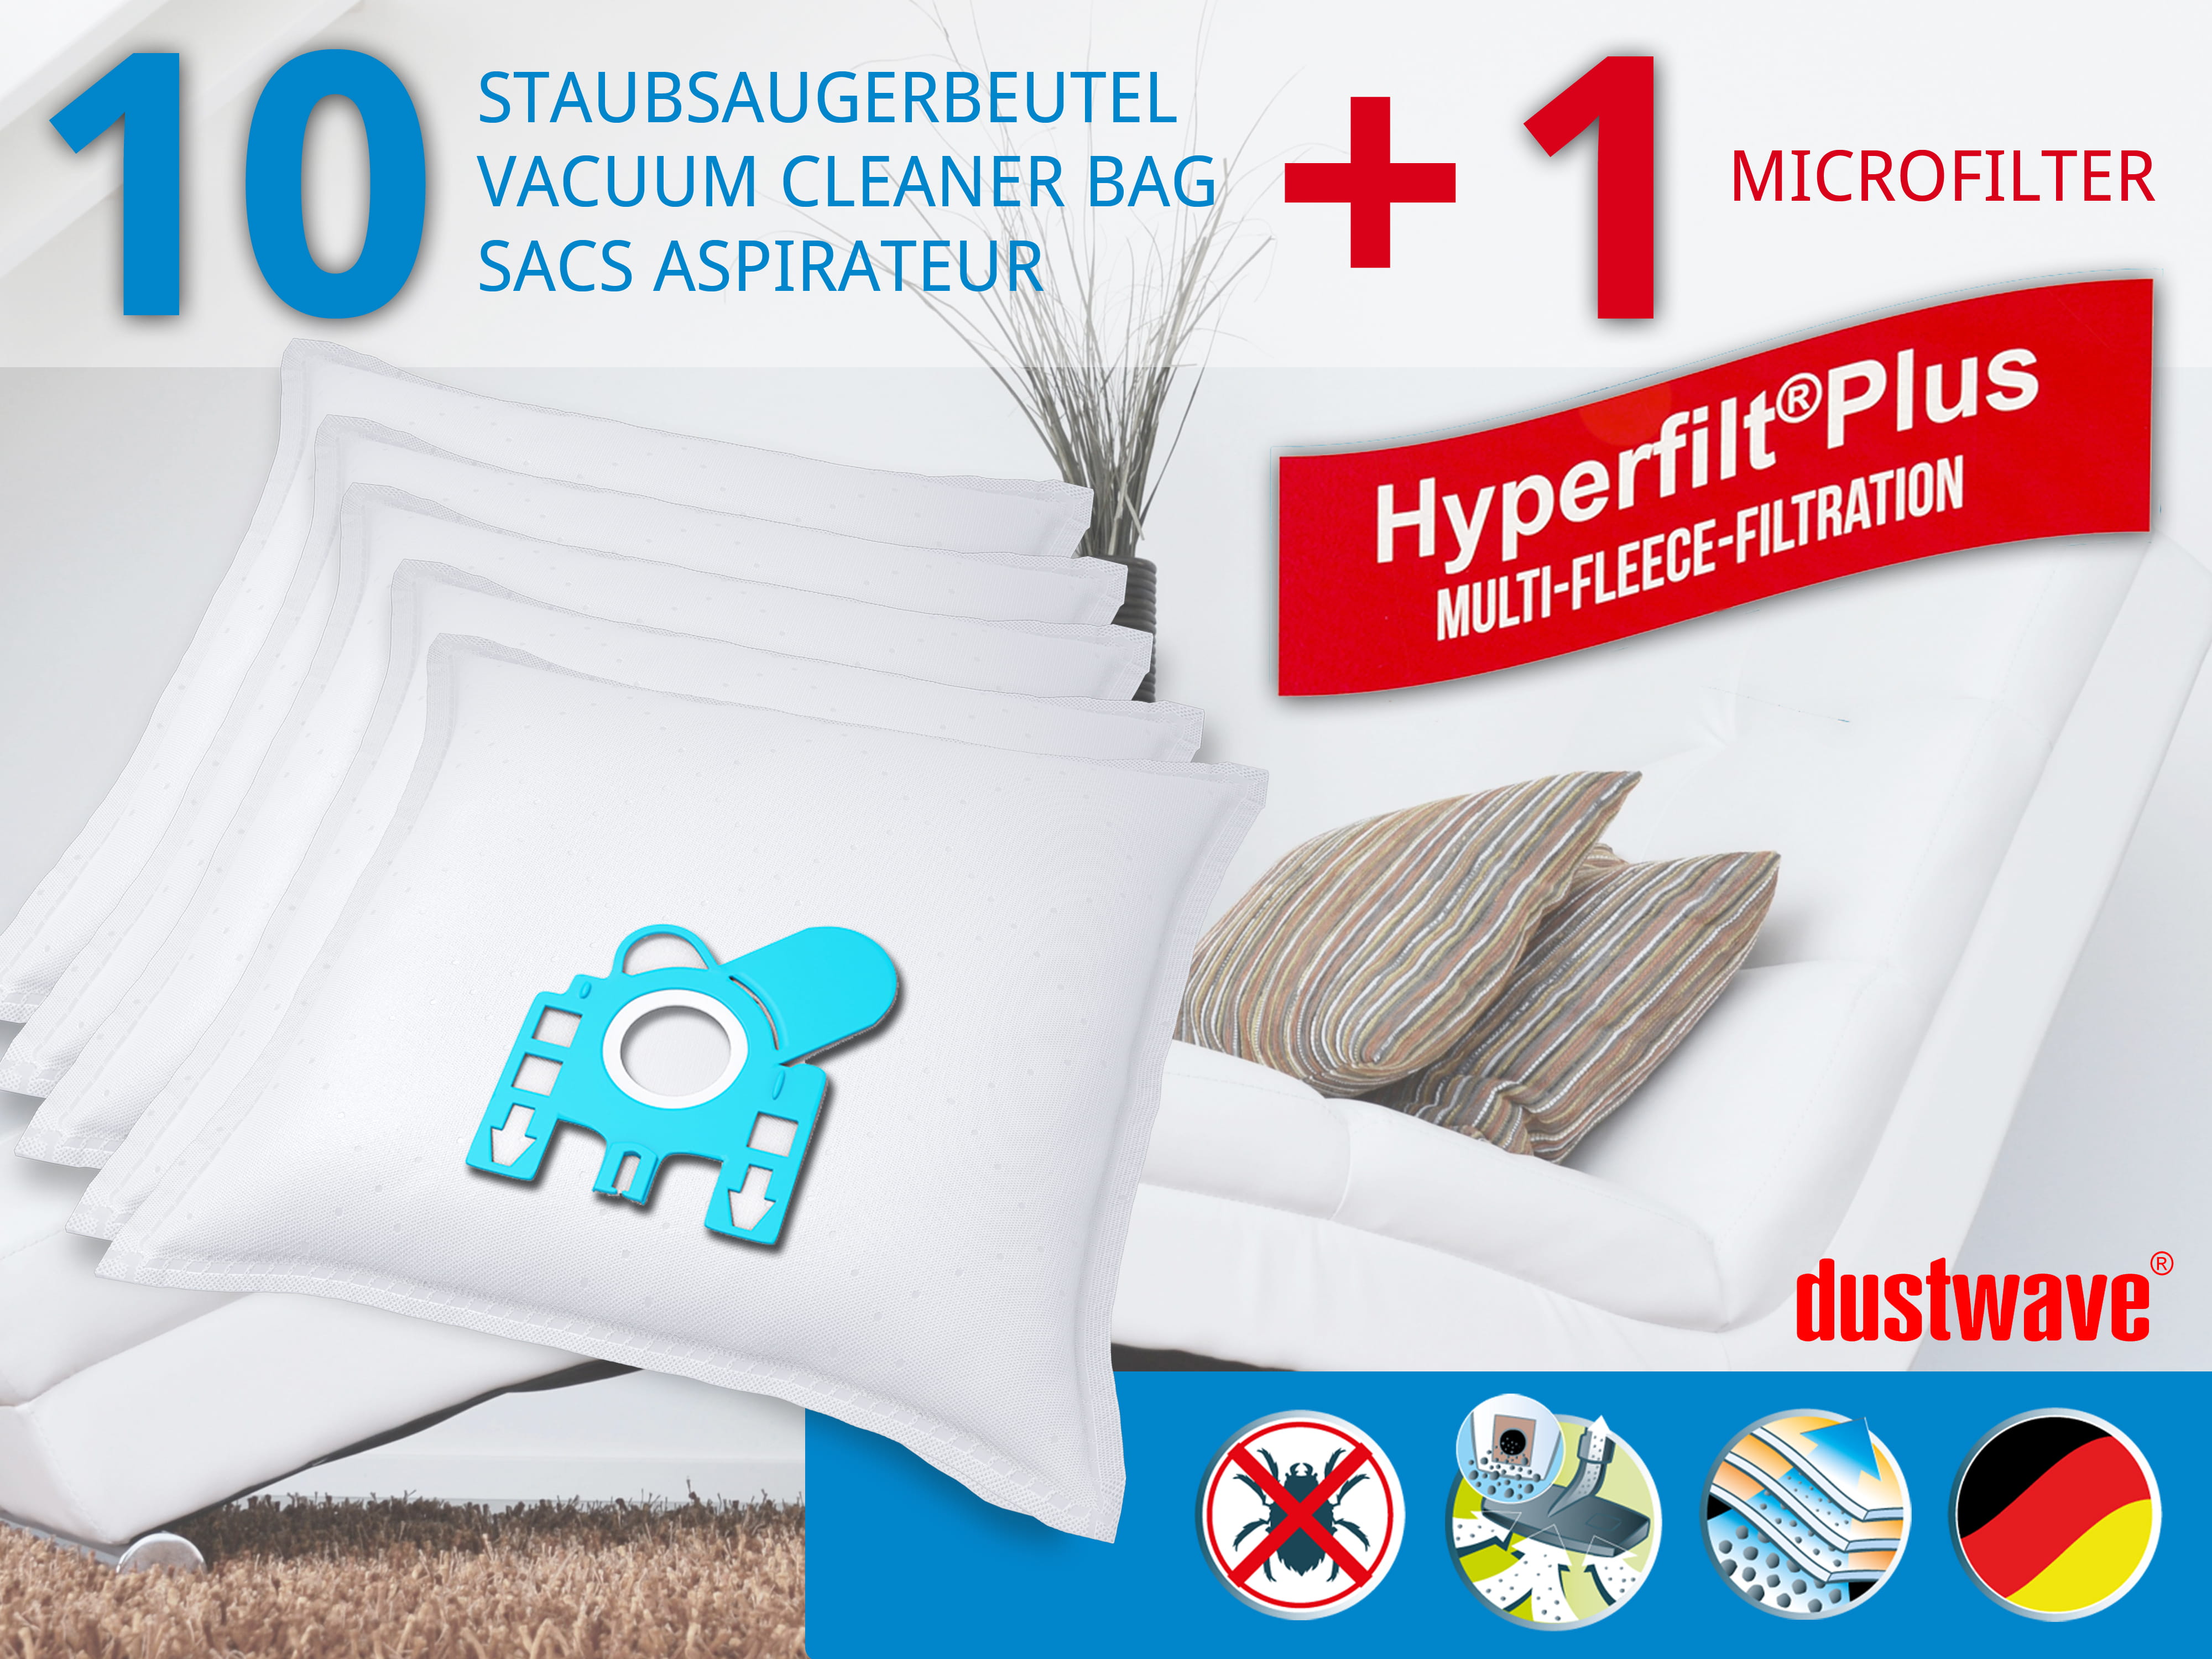 Dustwave® 10 Staubsaugerbeutel für Hoover TS2167 / TRTS2167 - hocheffizient, mehrlagiges Mikrovlies mit Hygieneverschluss - Made in Germany